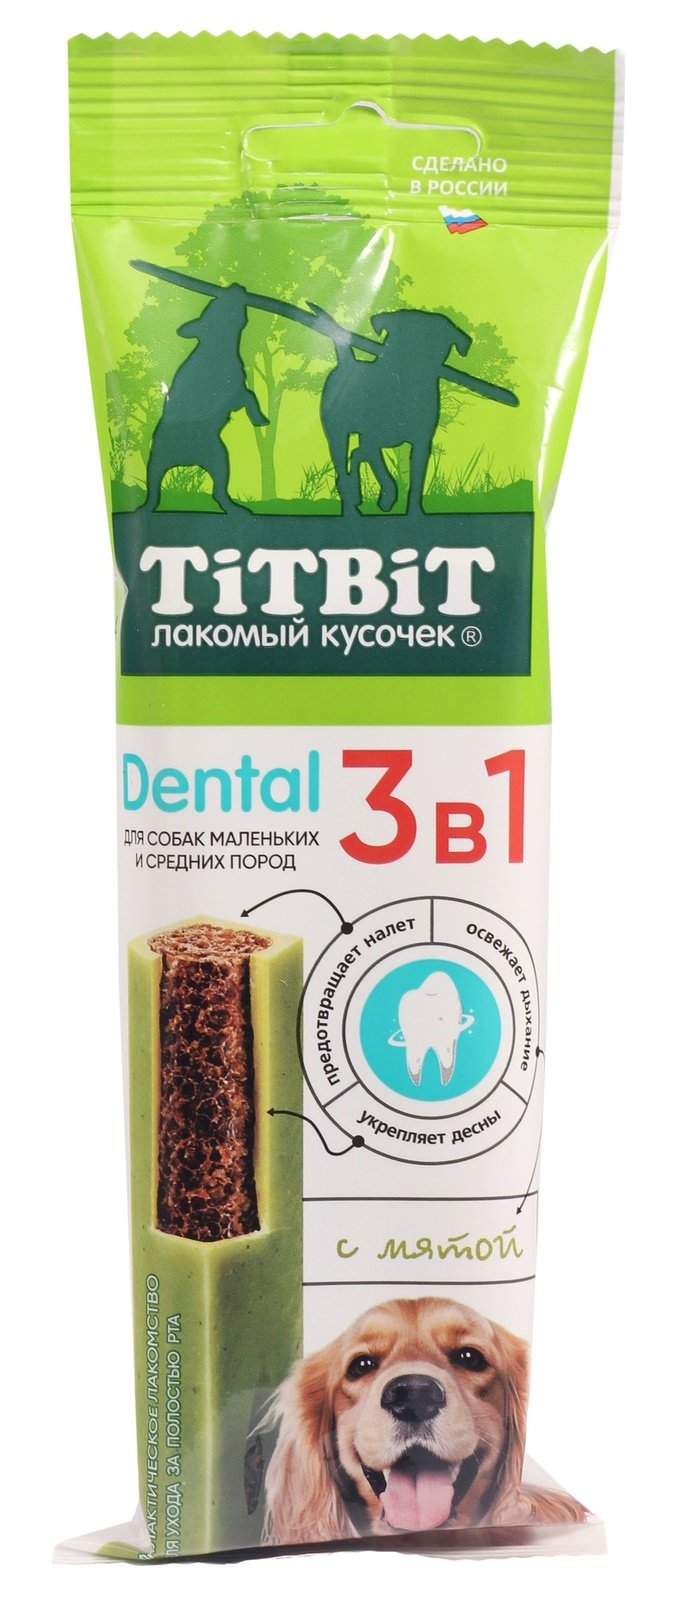 TiTBiT TiTBiT дентал 3в1 с мятой для собак мелких и средних пород 110 гр (110 гр)